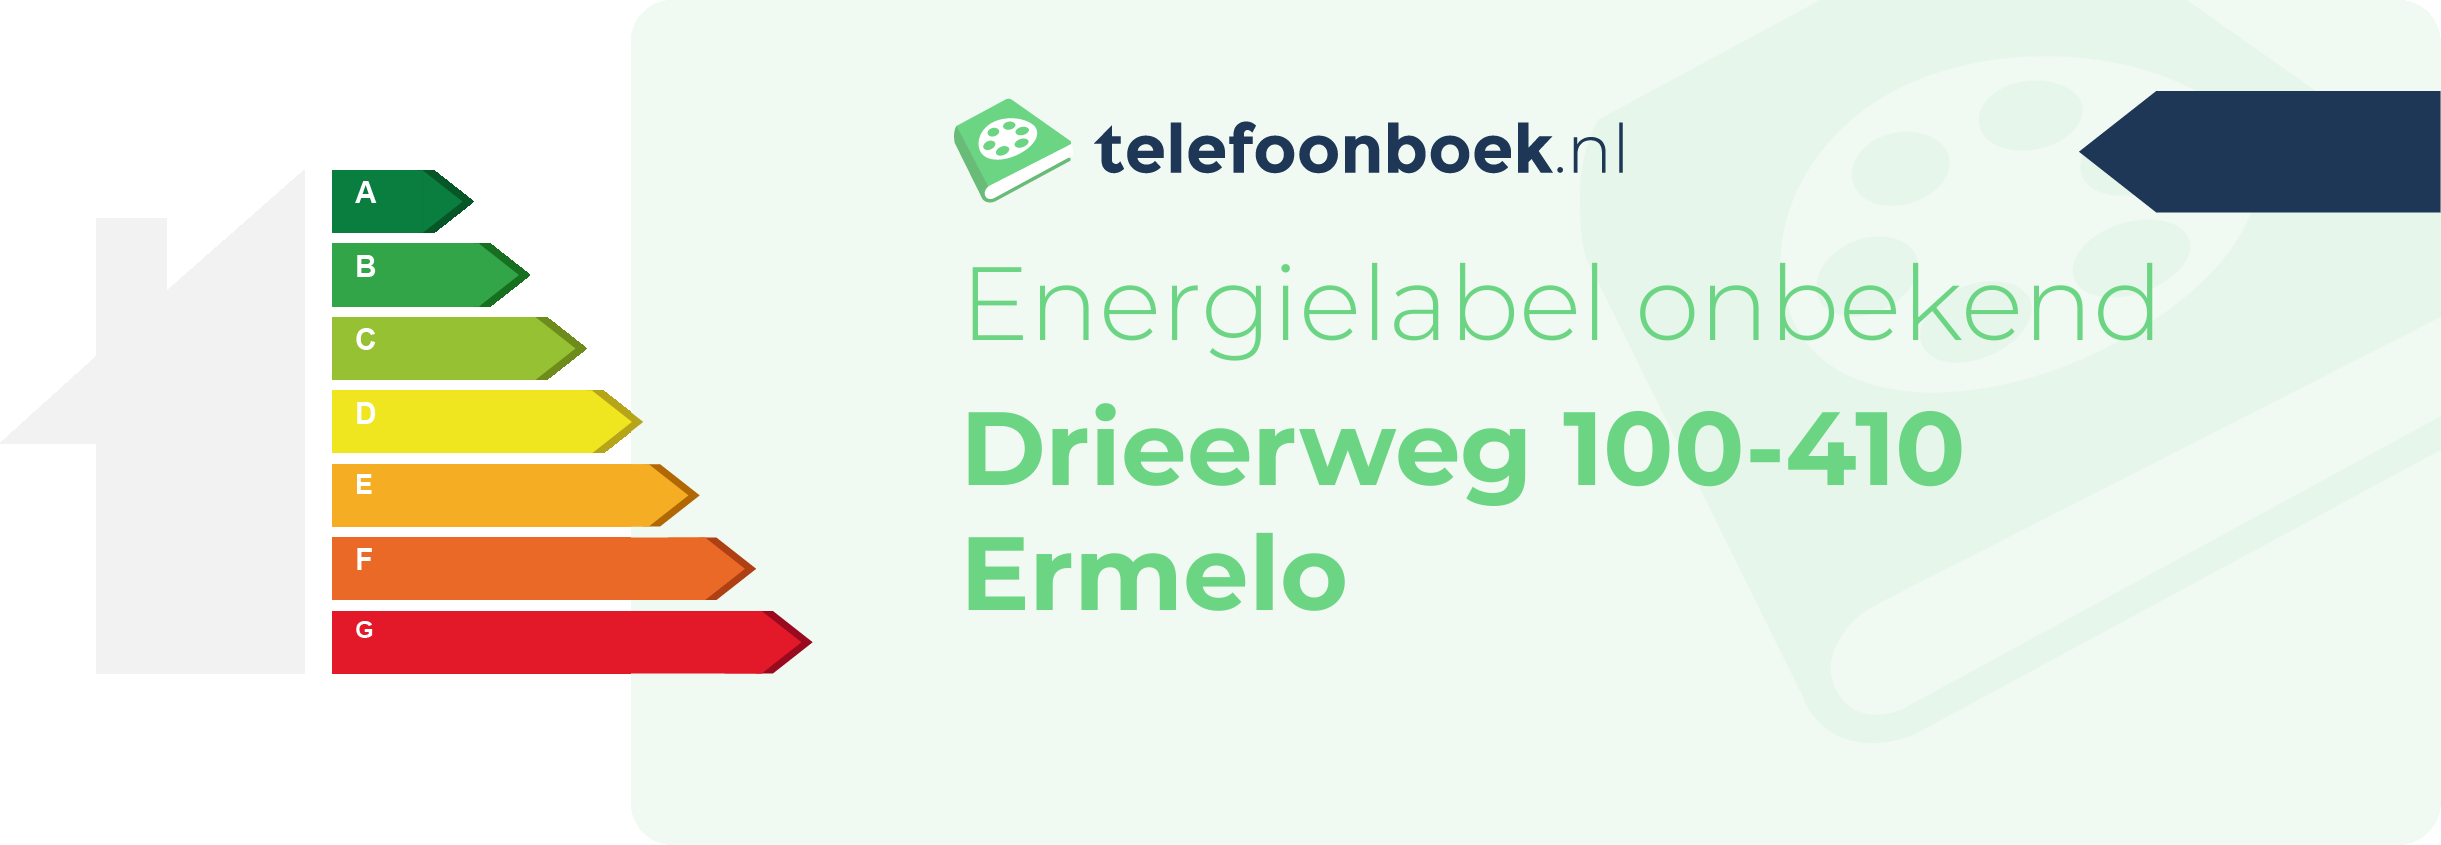 Energielabel Drieerweg 100-410 Ermelo